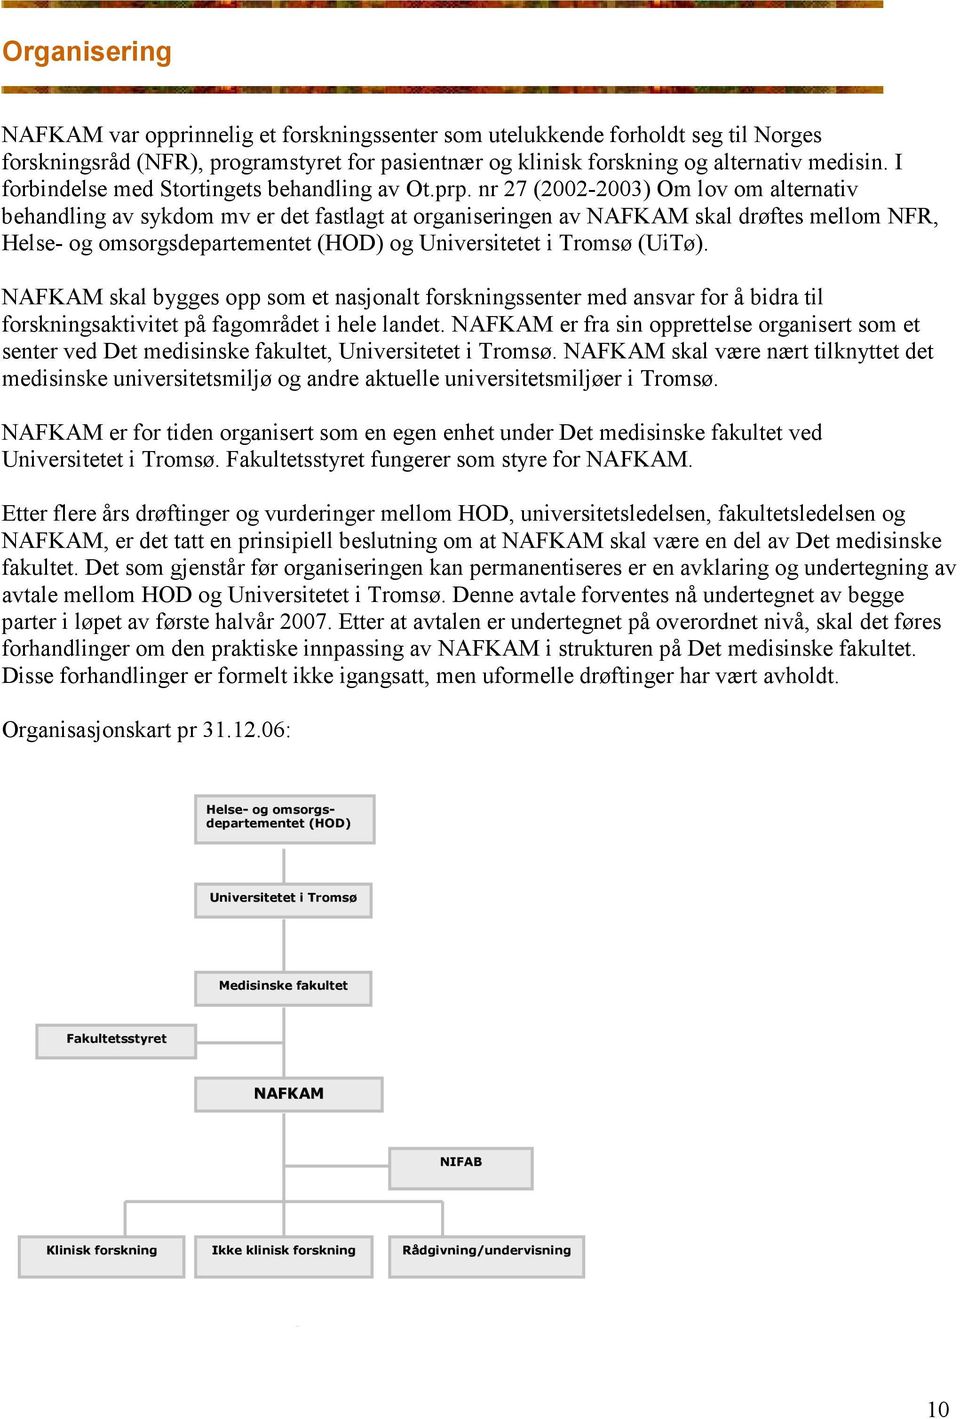 nr 27 (2002-2003) Om lov om alternativ behandling av sykdom mv er det fastlagt at organiseringen av NAFKAM skal drøftes mellom NFR, Helse- og omsorgsdepartementet (HOD) og Universitetet i Tromsø